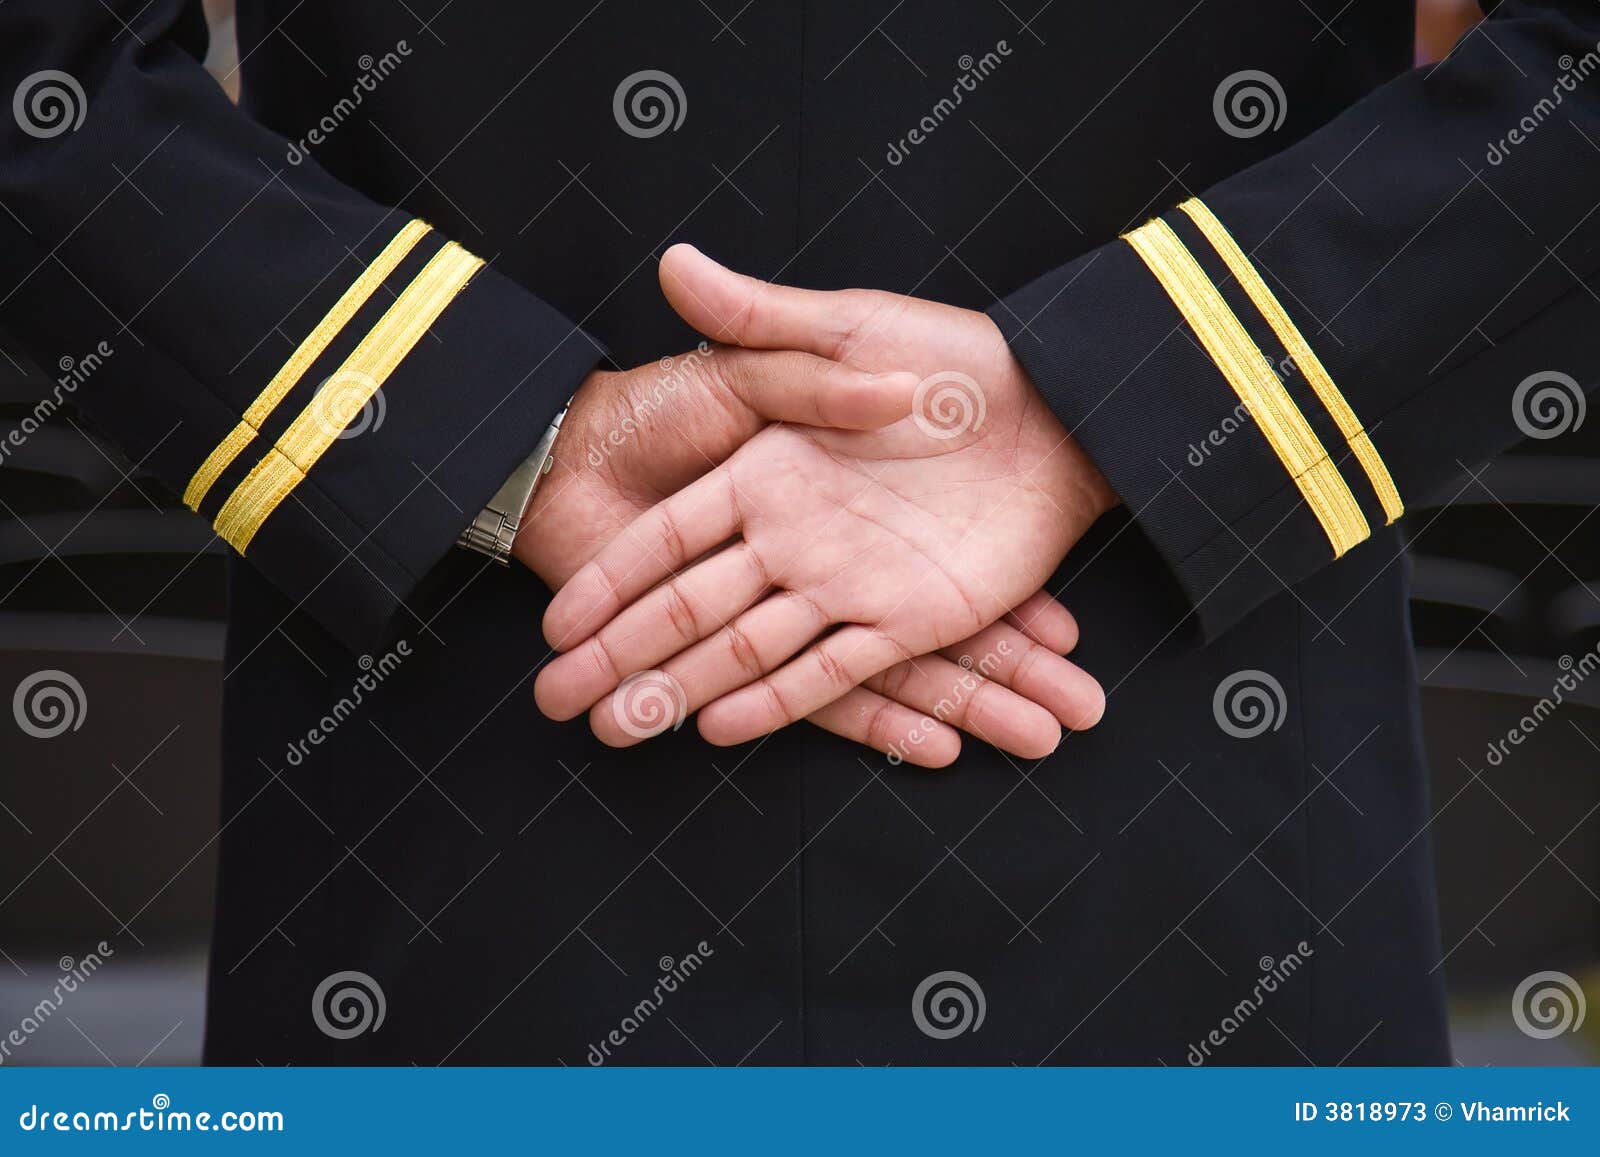 naval recruit hands.